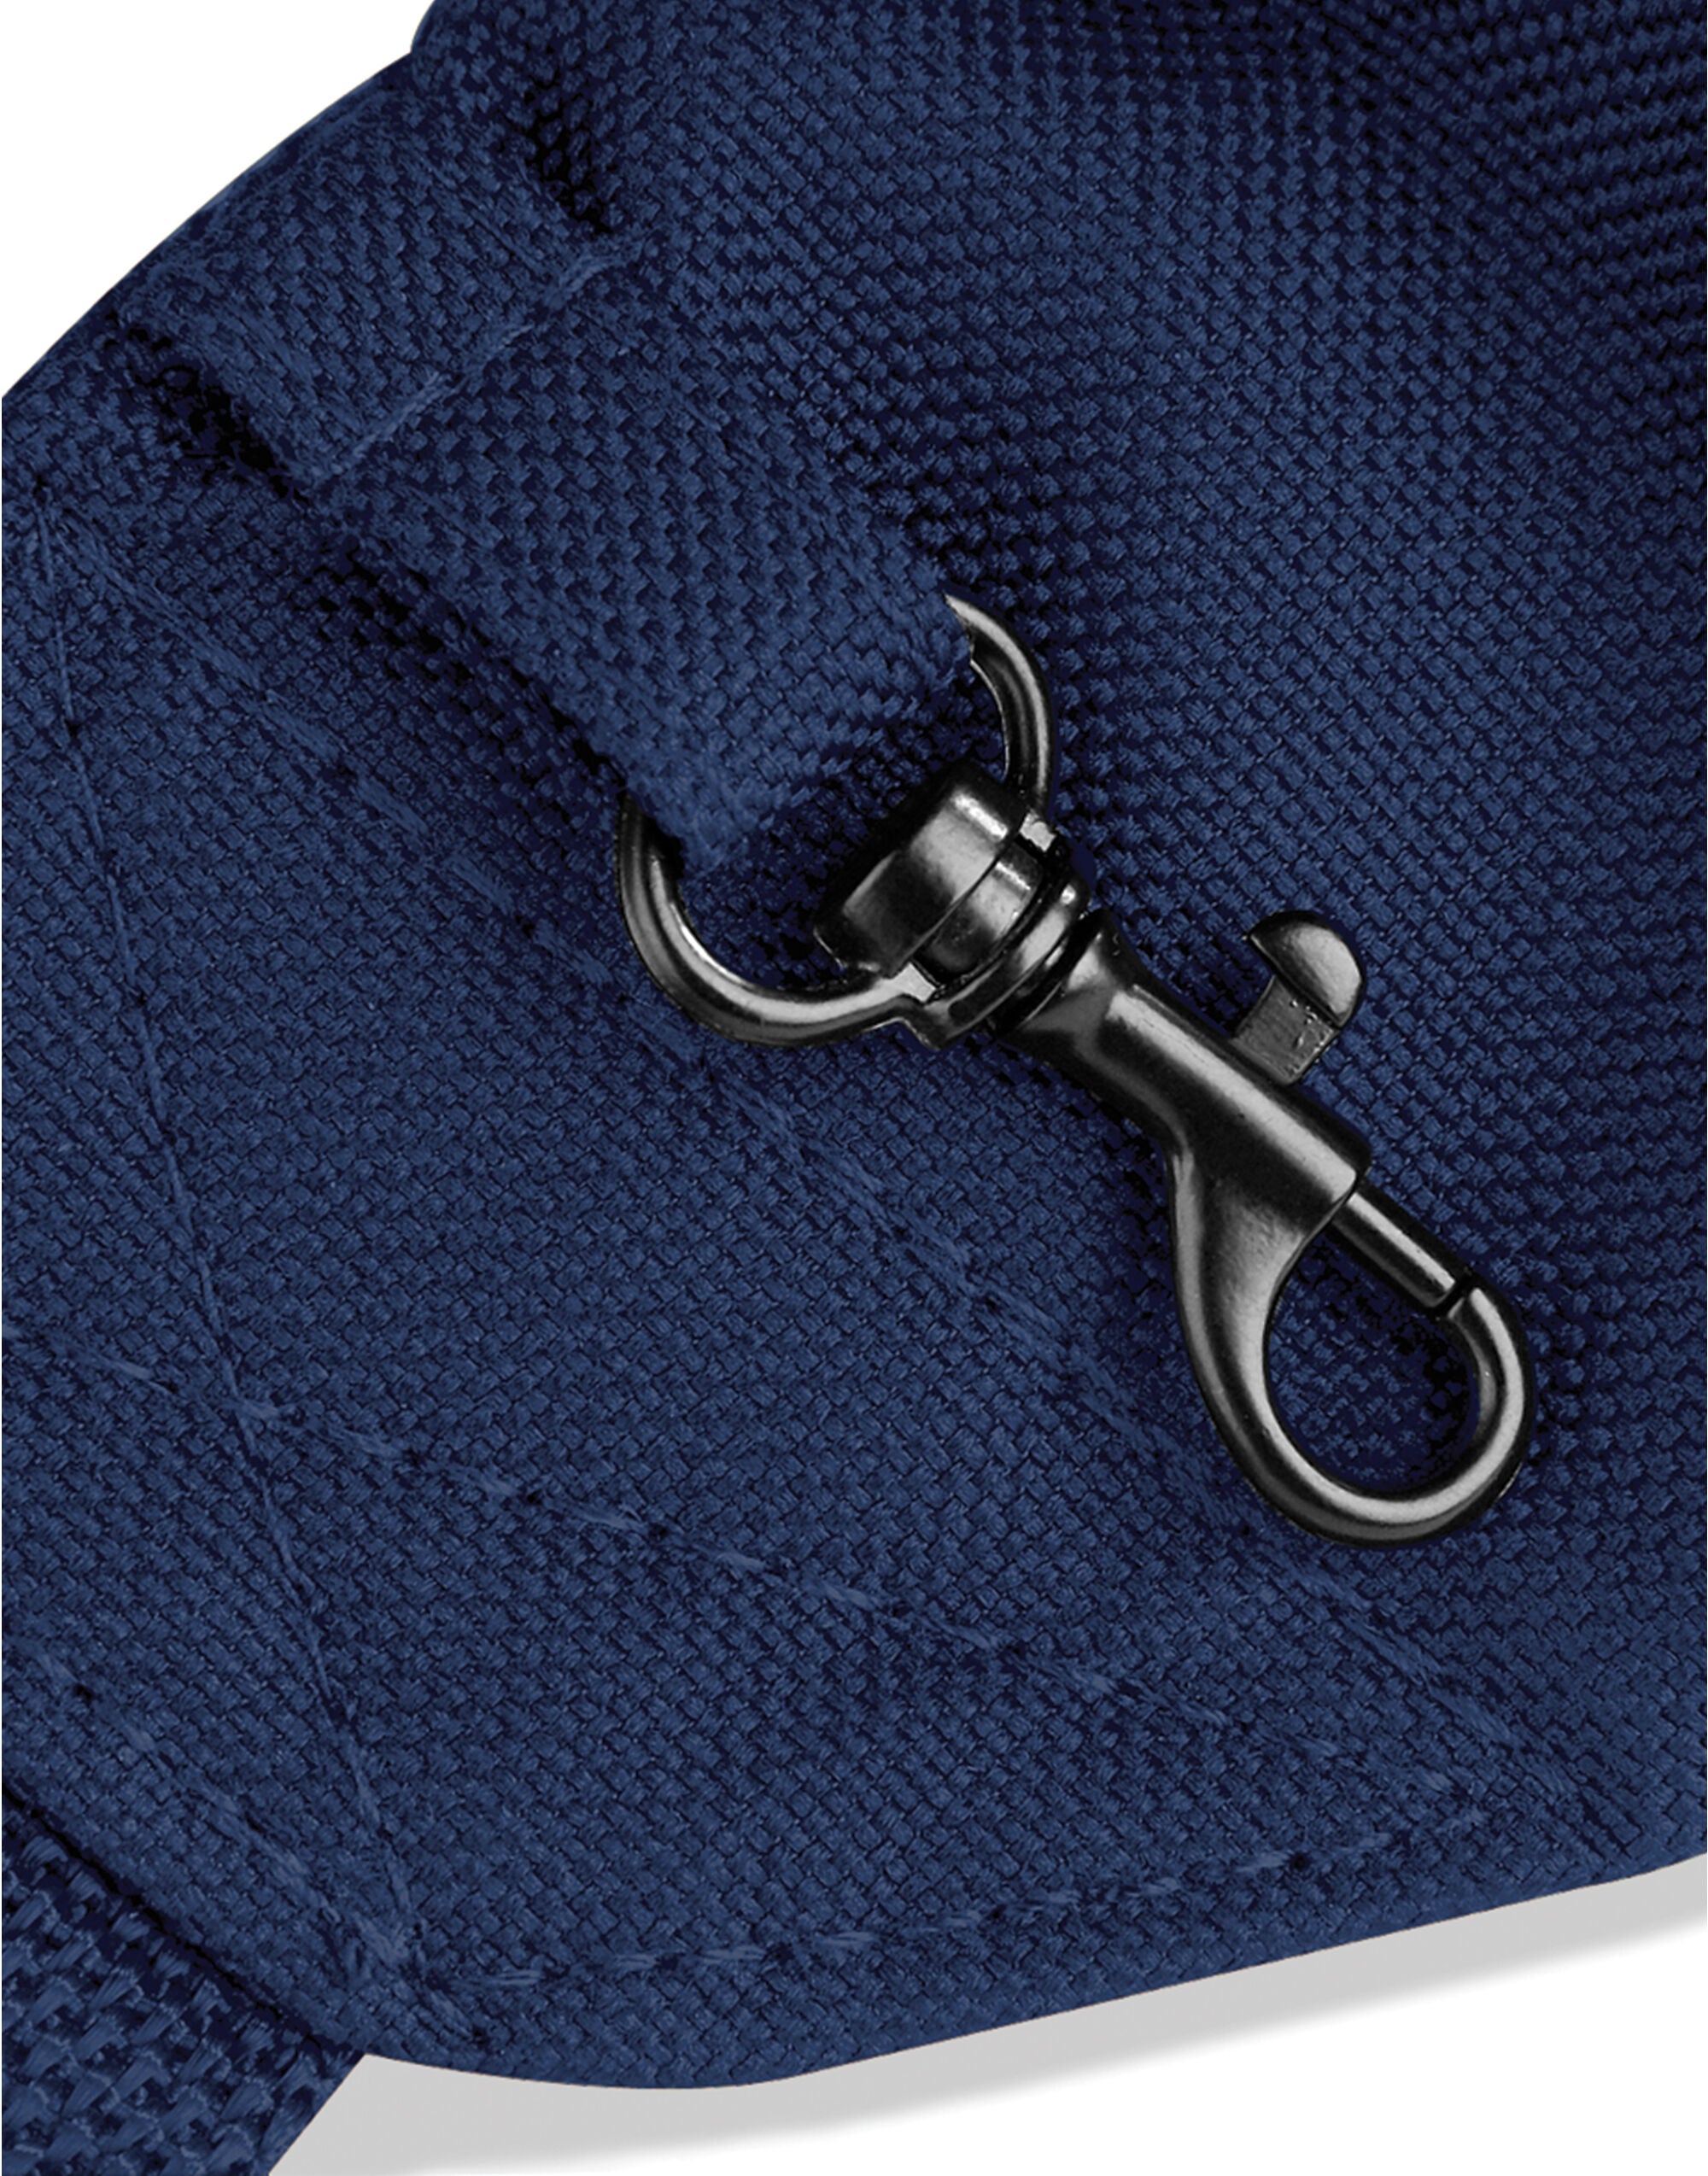 Quadra Belt Bag Adjustable webbing (QD12)